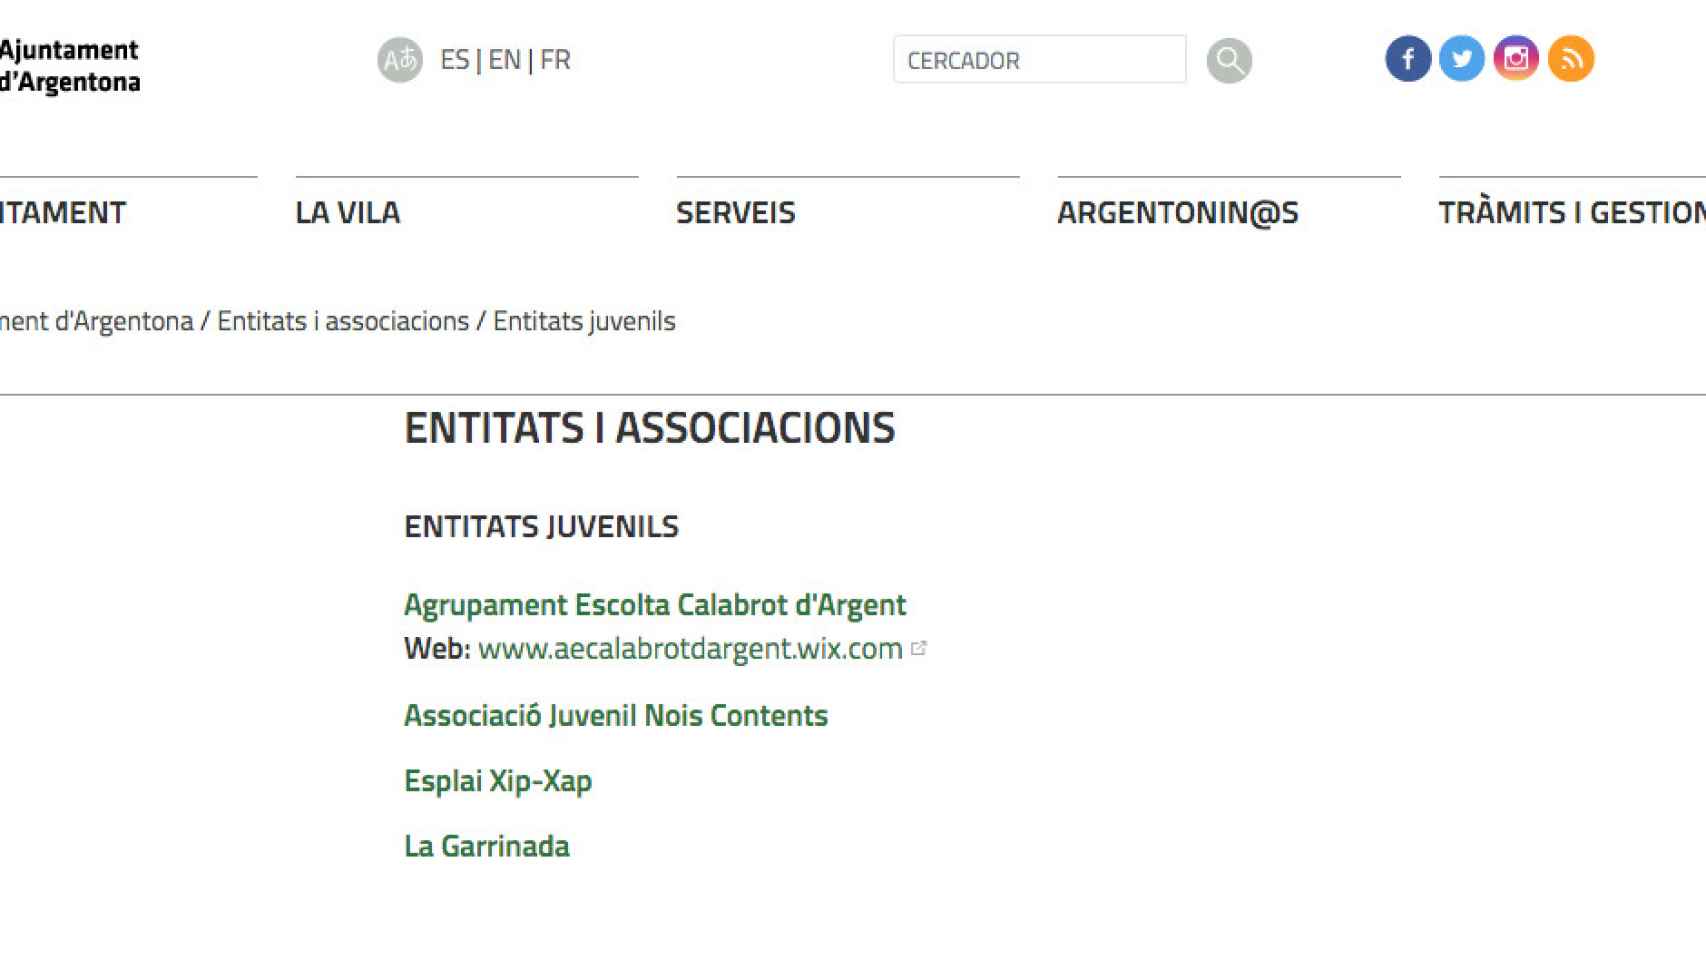 Página web del Ajuntament d'Argentona, en la que se anuncian entidades juveniles